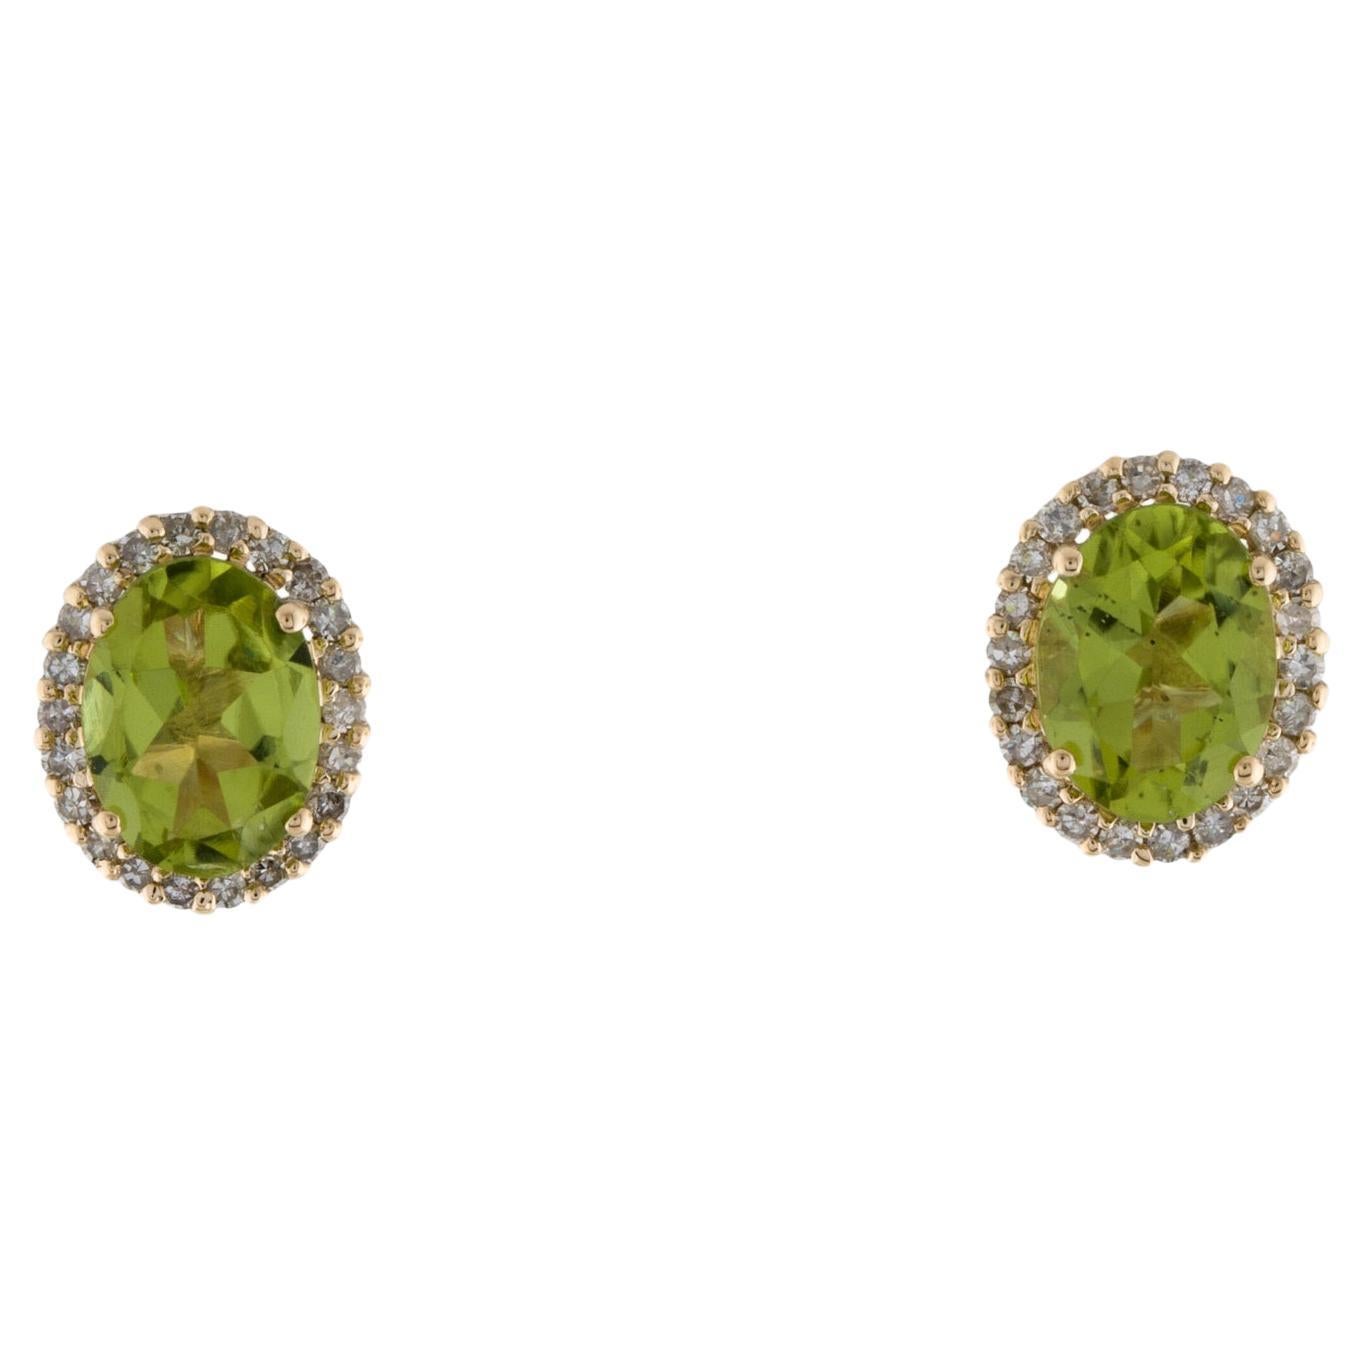 Clous chics en péridot 14 carats et 7 diamants - Collection élégante de bijoux en pierres précieuses